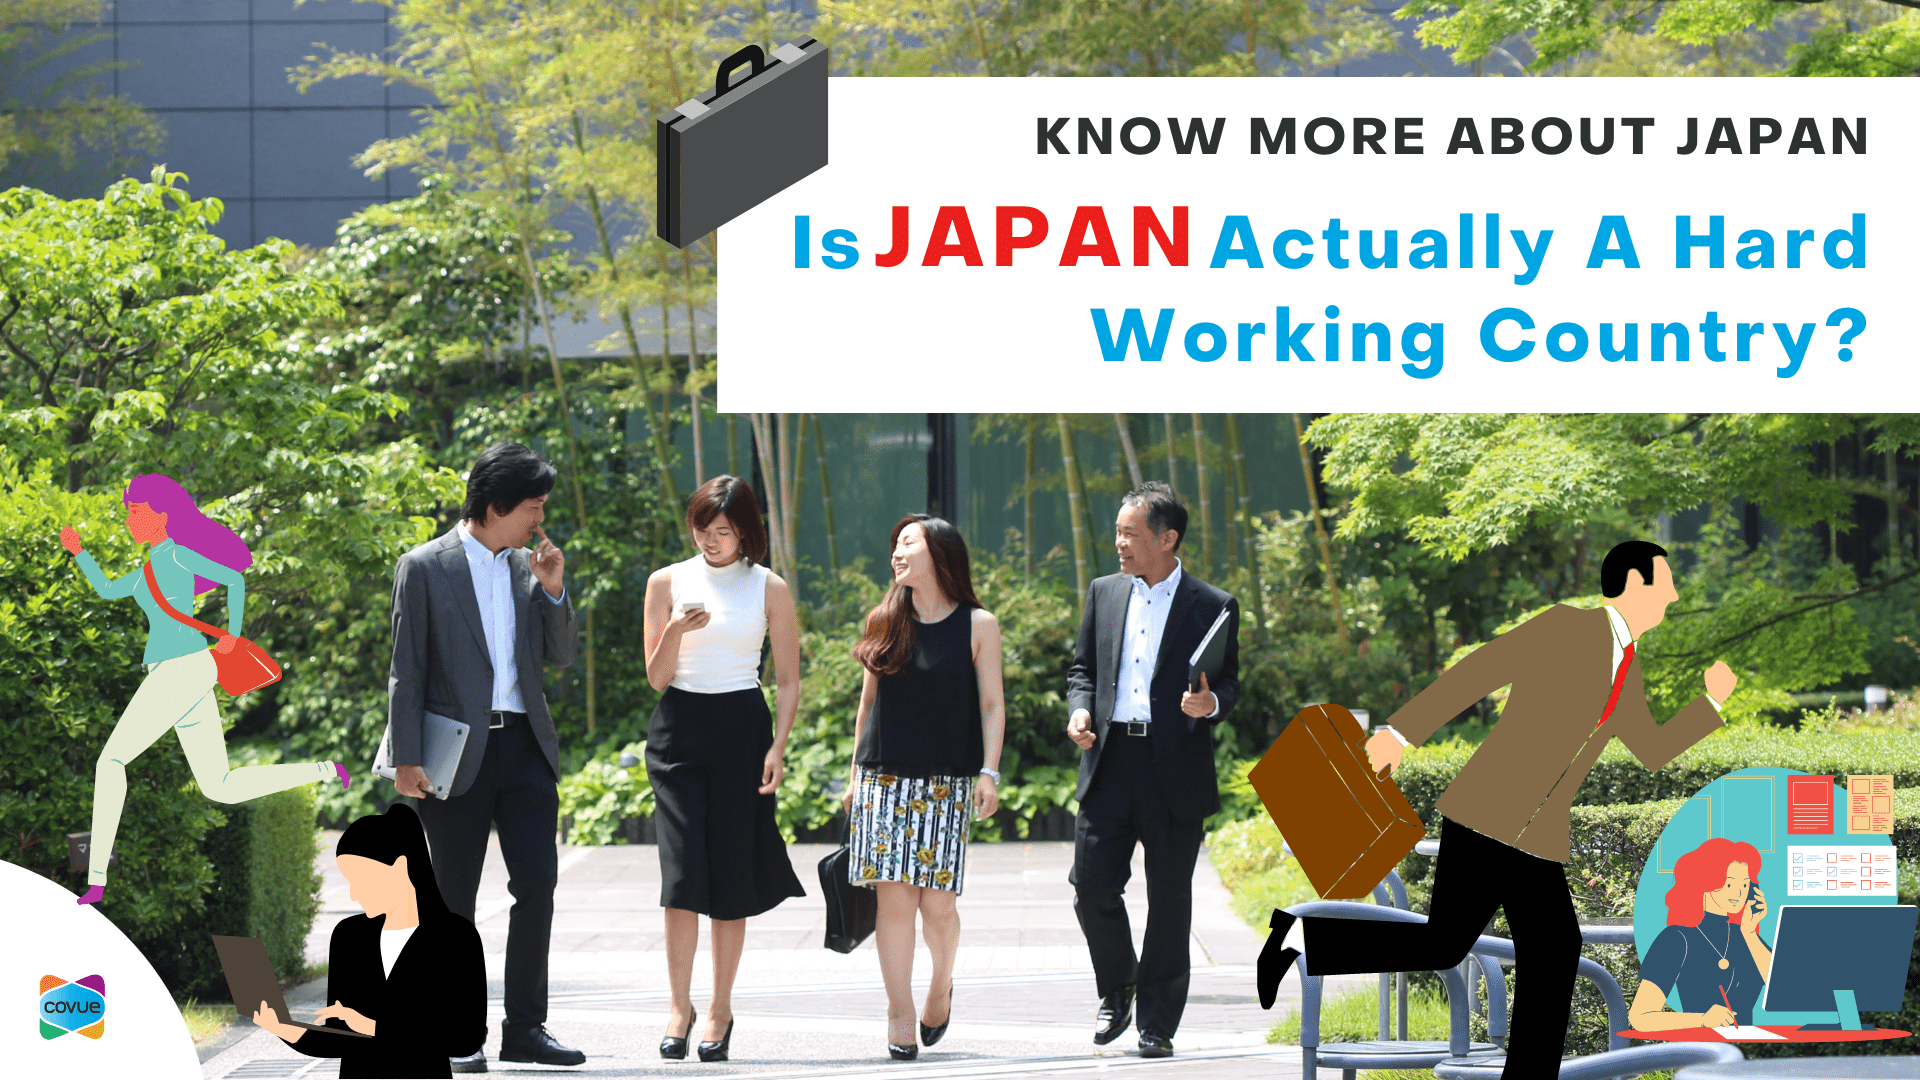 जापान वास्तव में एक कठिन काम कर रहे देश है